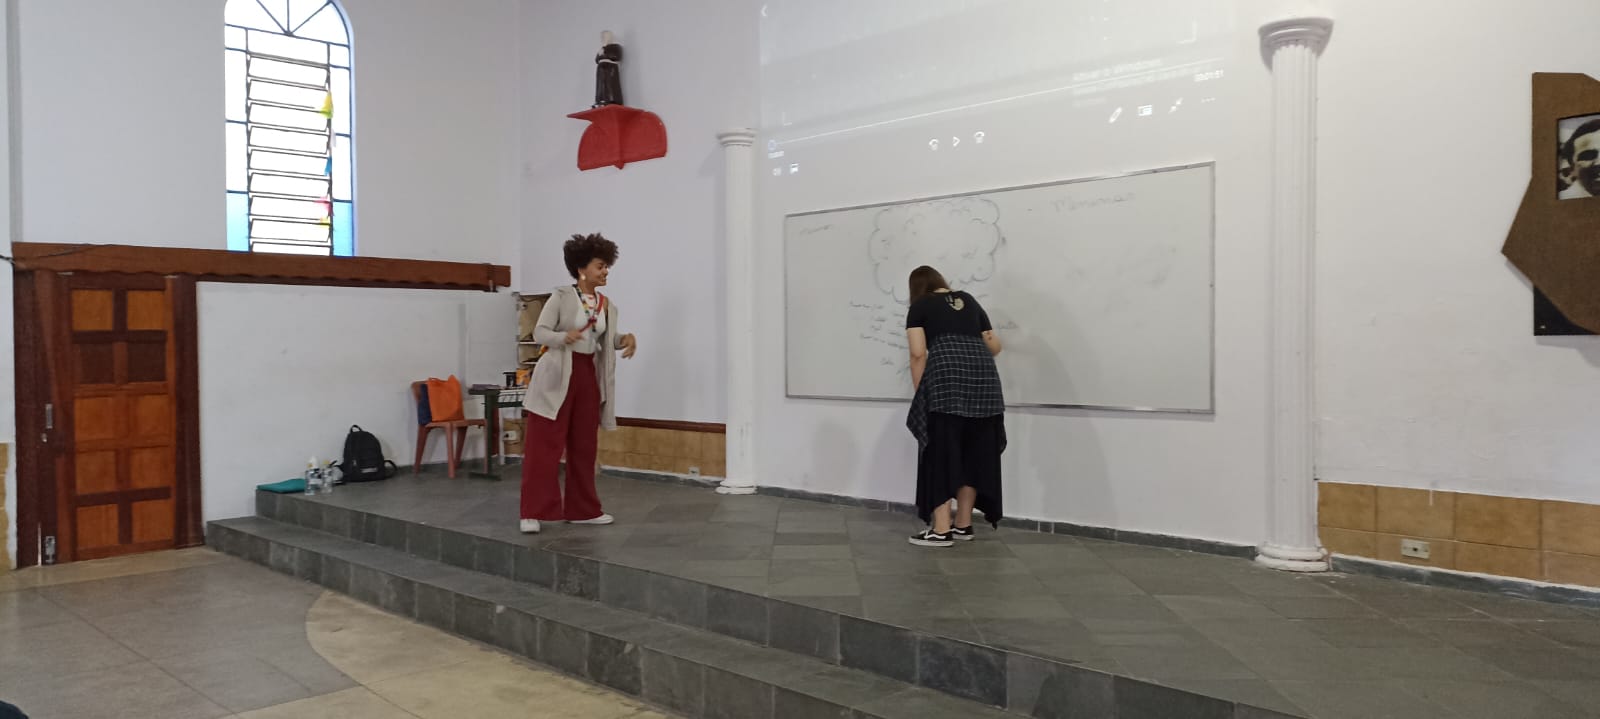 Duas mulheres estão em cima de um pequeno palco preto. Atrás delas há duas colunas brancas na parede. Na parede, há um quadro branco, onde elas fazem alguns desenhos e escrevem algumas palavras.